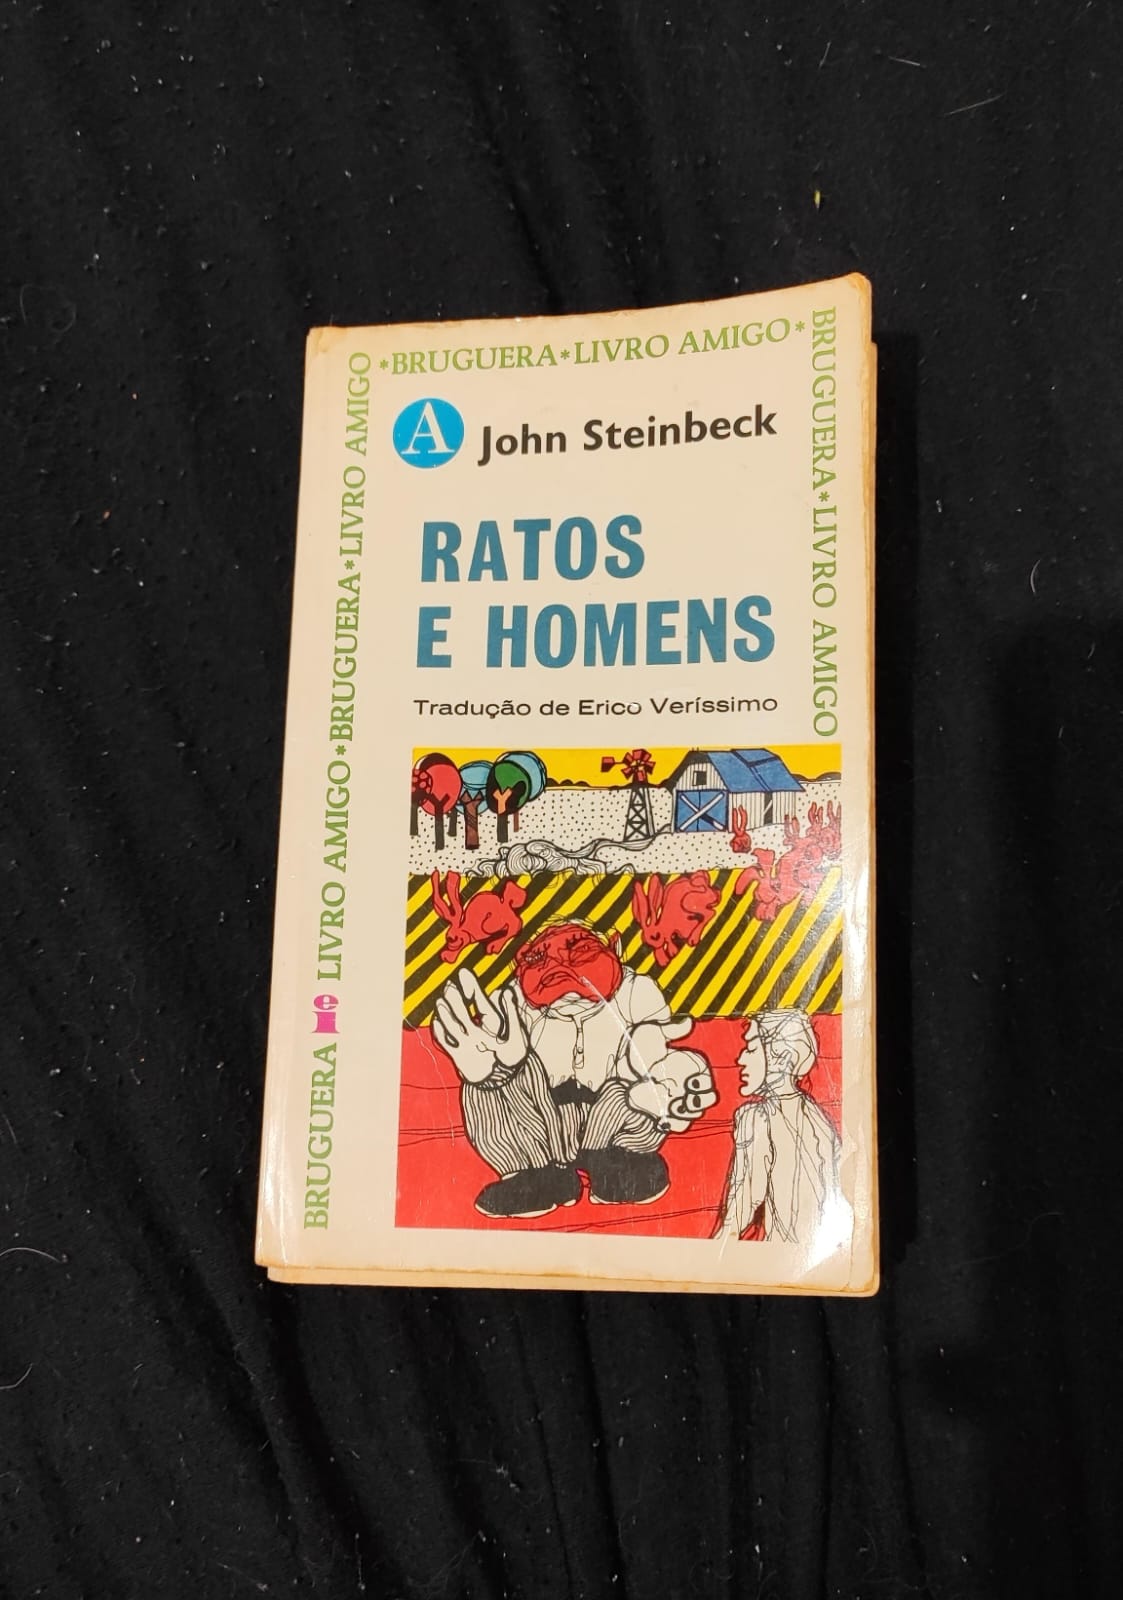 John Steinbeck: Ratos e homens (Paperback, Português language, Editorial Bruguera)